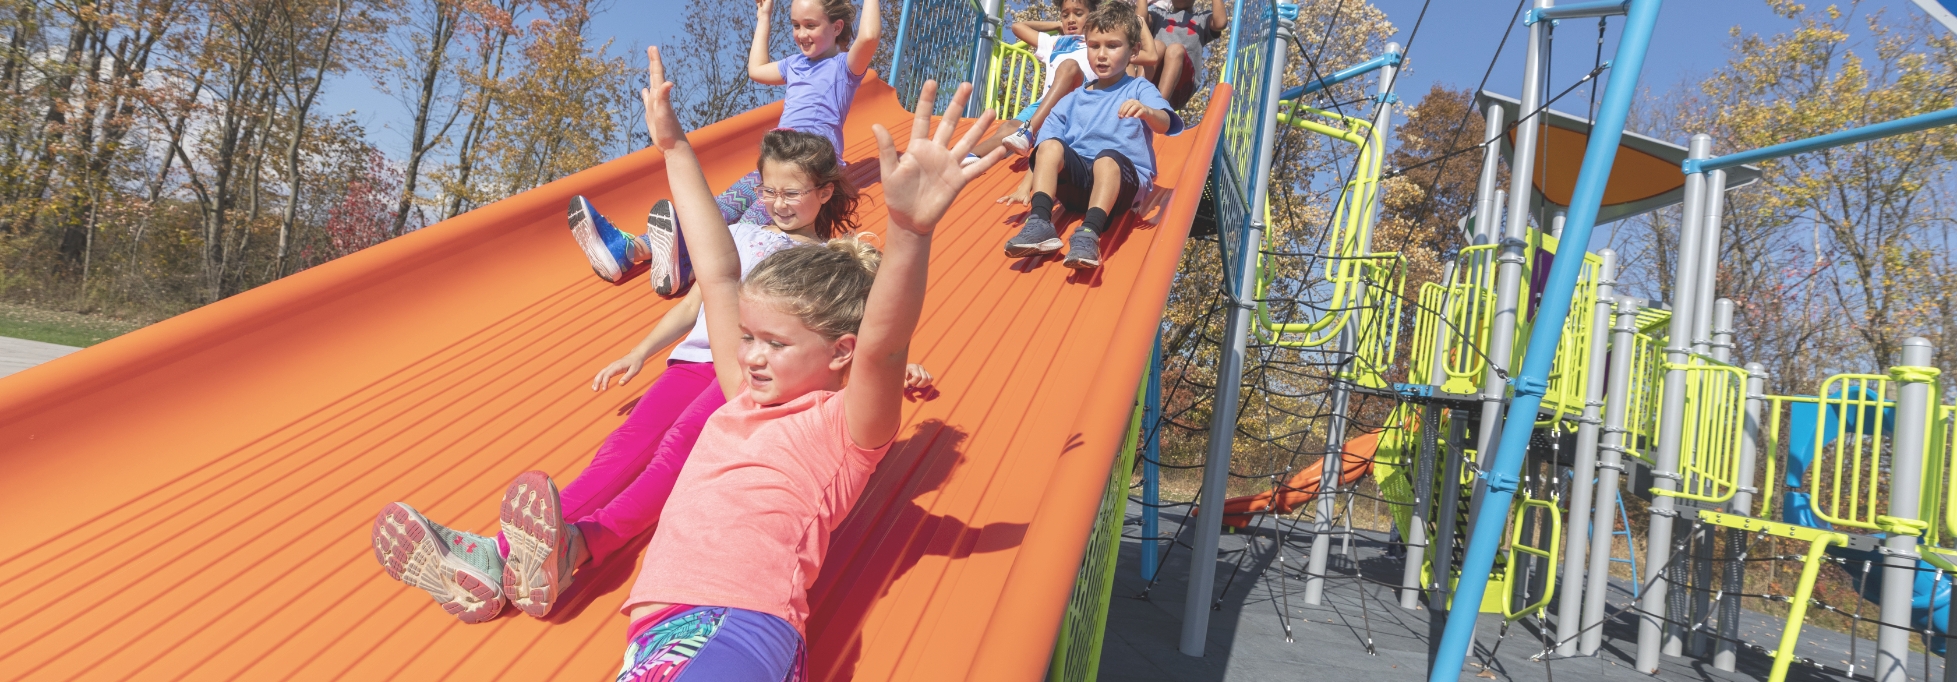 Children sliding down an orange slide.